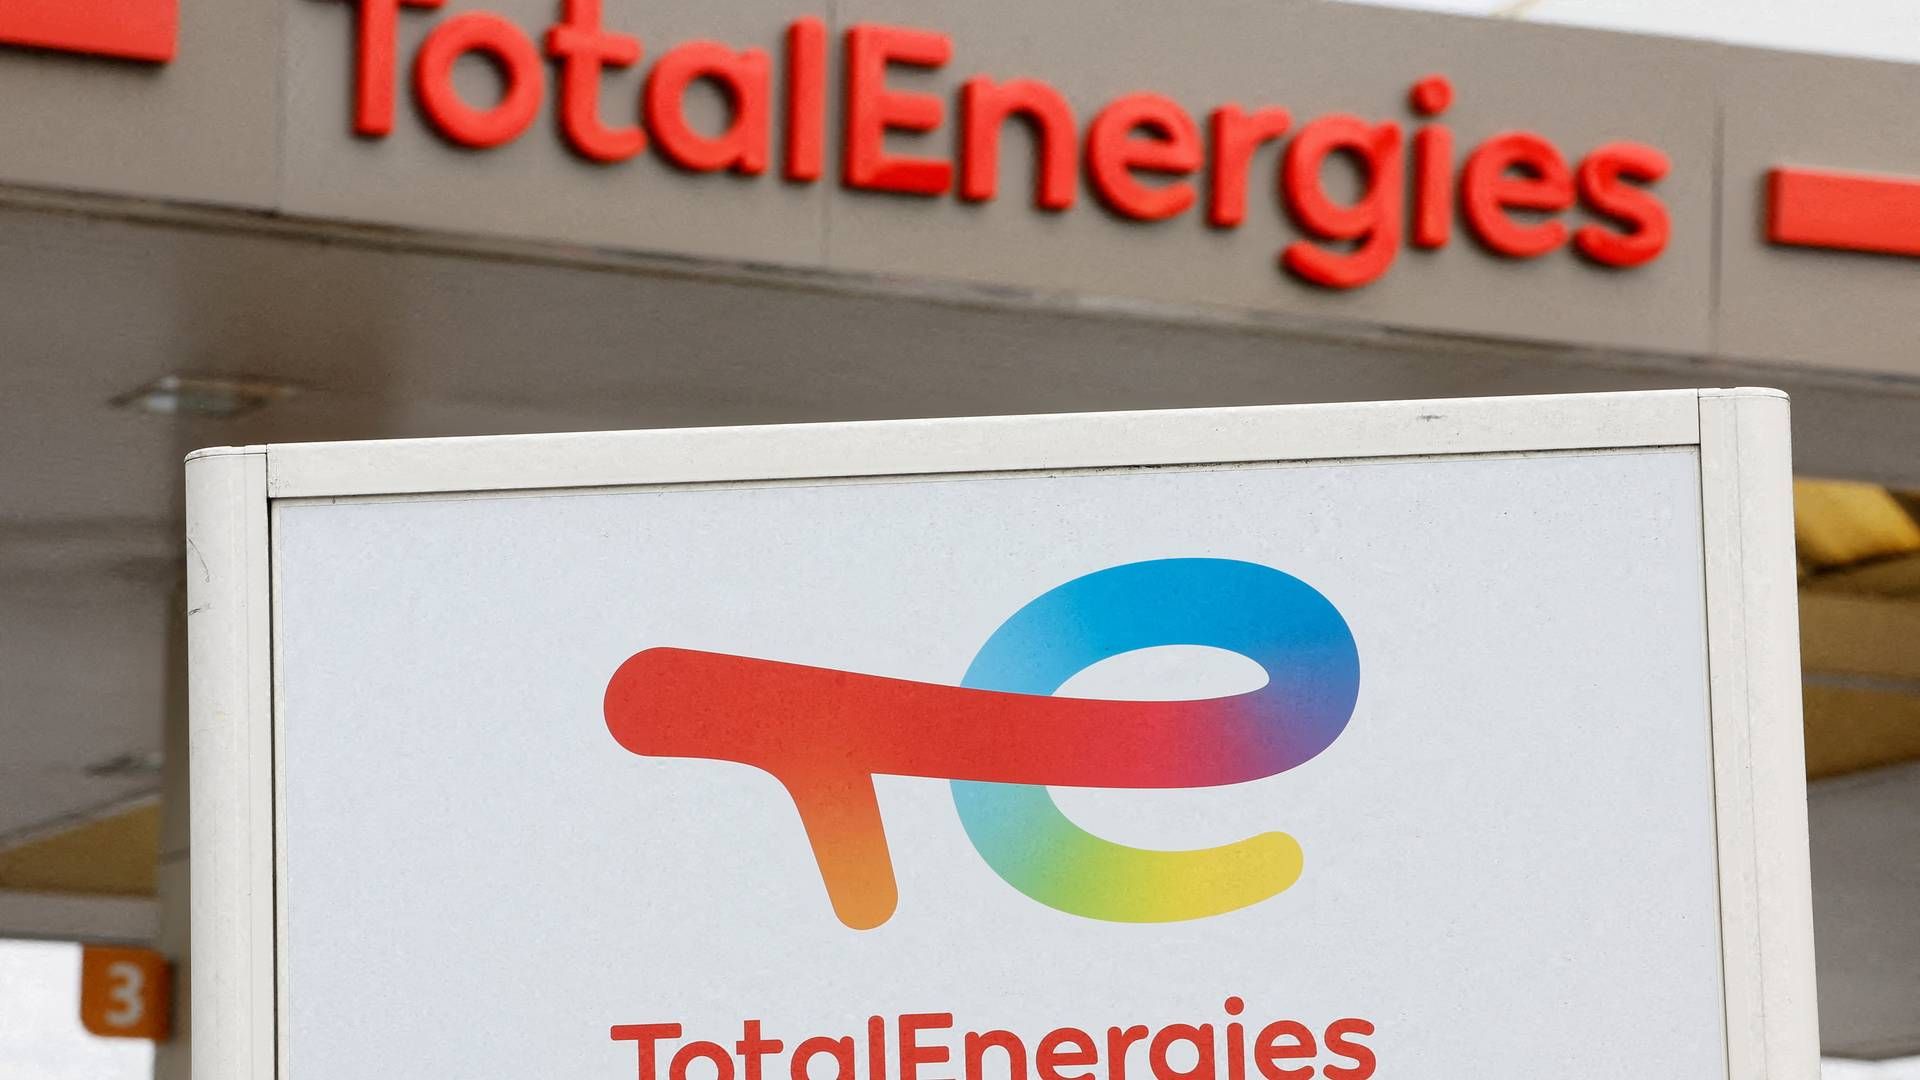 FALL: Det franske oljeselskapet Total Energies oppnådde en inntekt på 59 milliarder dollar. Dette er en nedgang på 10 milliarder fra året før. | Foto: Eric Gaillard